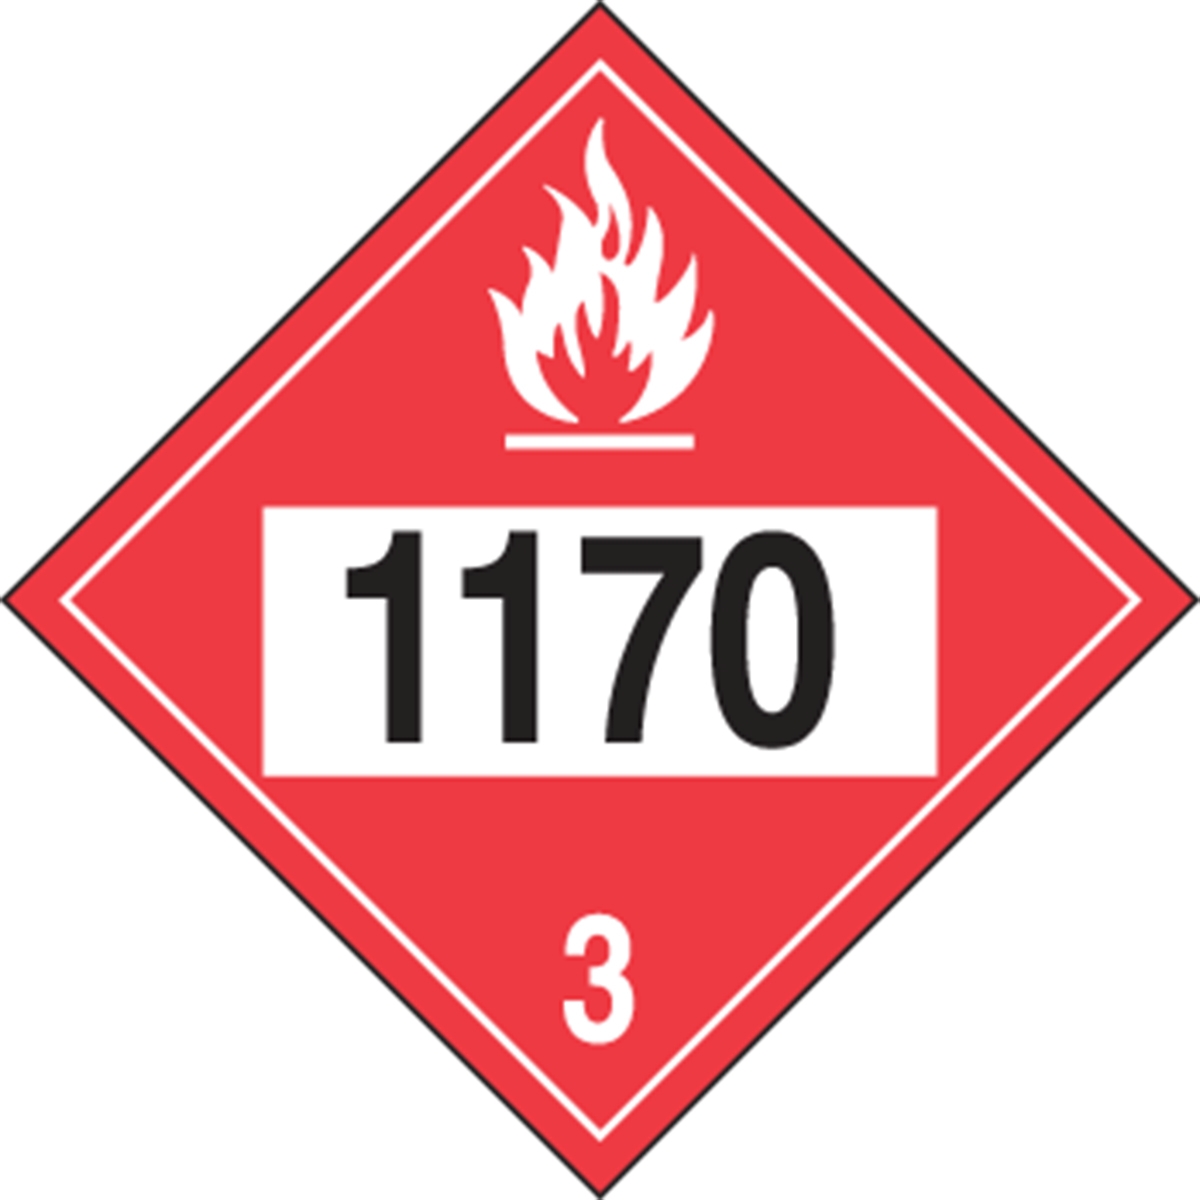 1170 (Ethyl Alcohol; Ethanol; Ethanol Solution) 